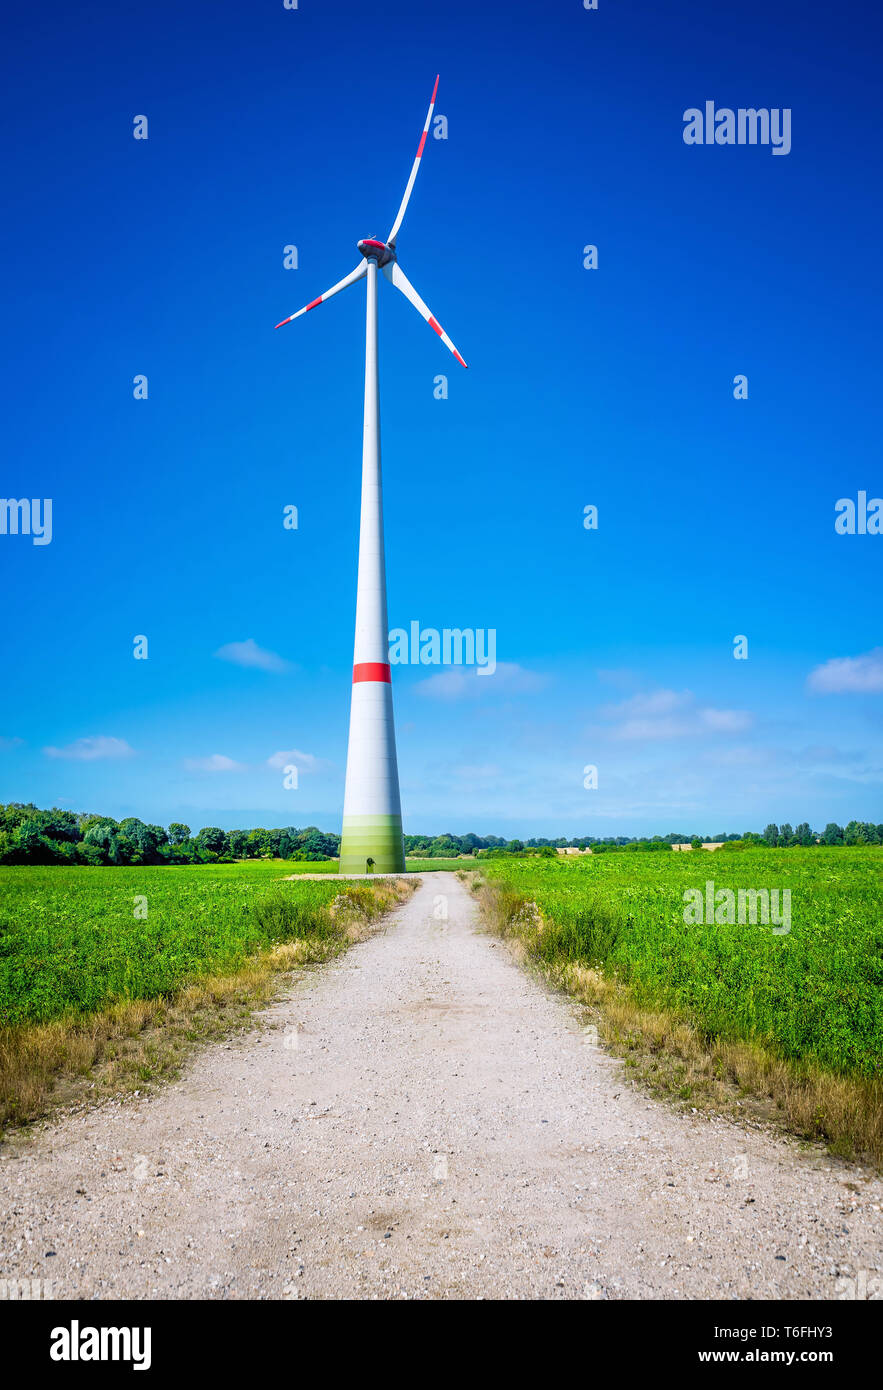 green energy Stock Photo